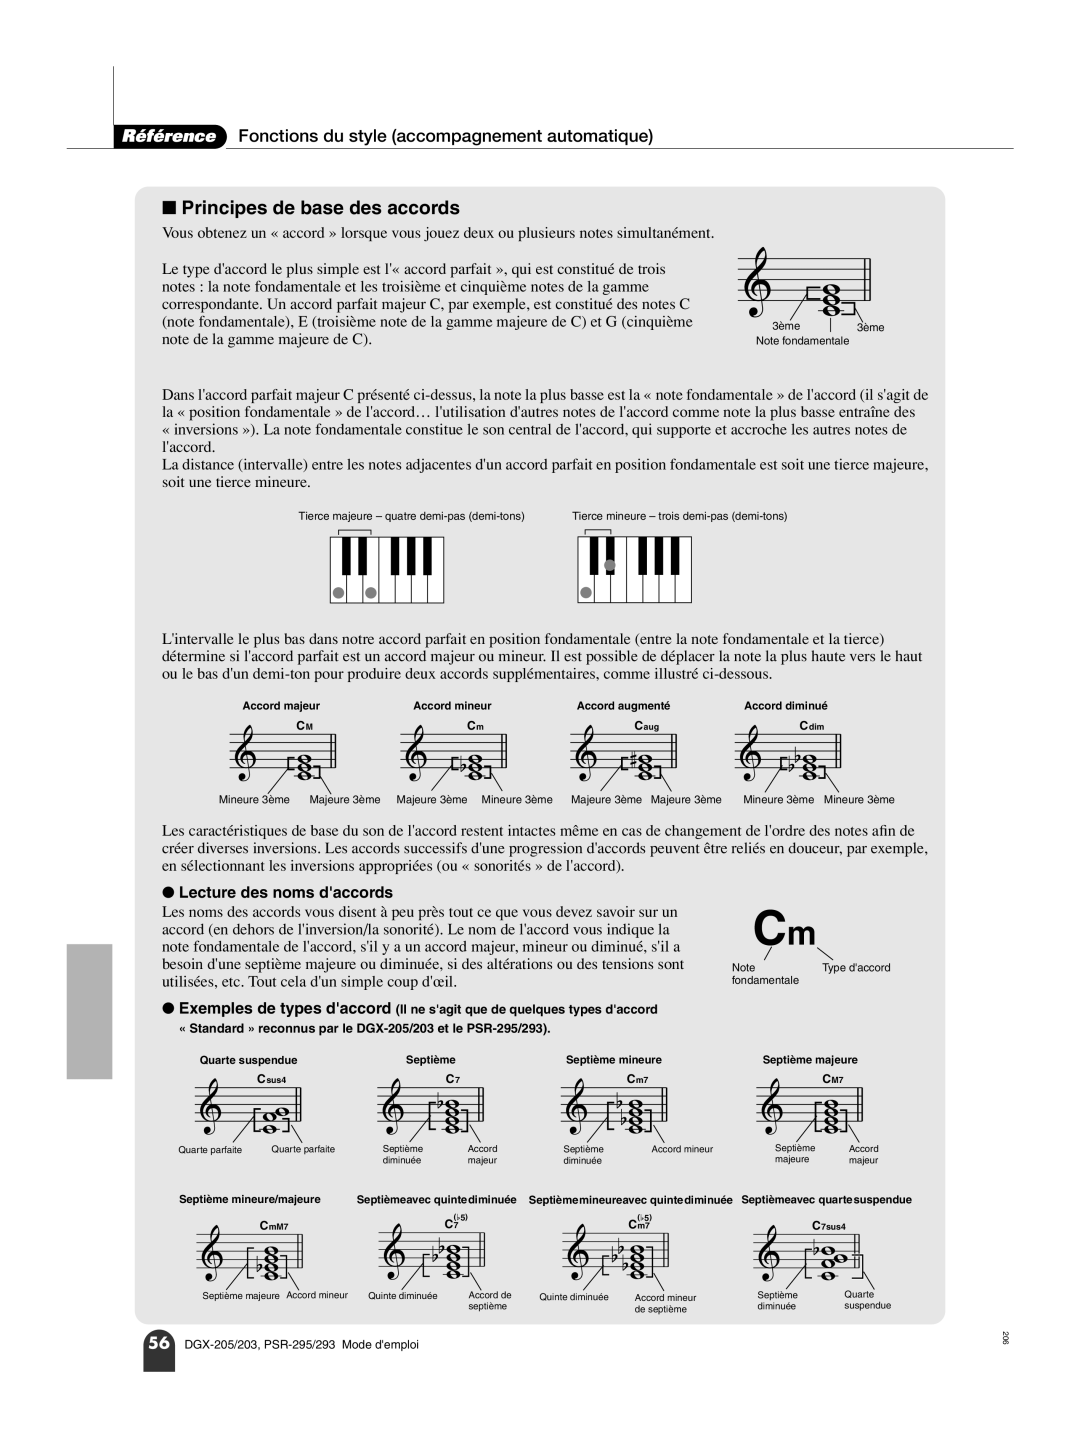 Yamaha PORTATONE PSR-293 Principes de base des accords, Référence Fonctions du style accompagnement automatique 